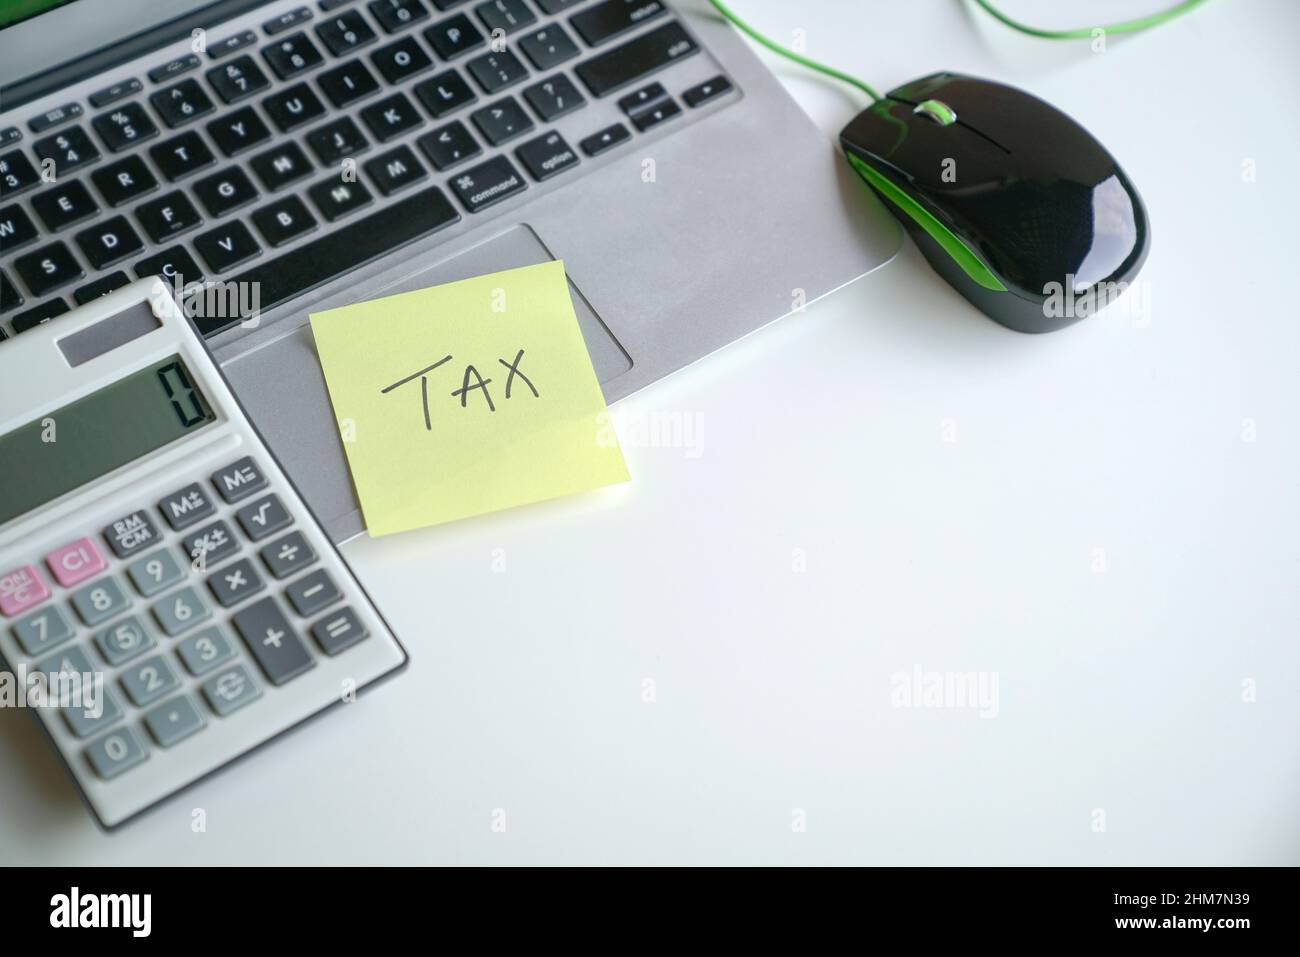 Das Wort Steuer auf gelbem Klebepapier auf dem Laptop und neben dem Rechner. Konzept der Steueranmeldung. Stockfoto